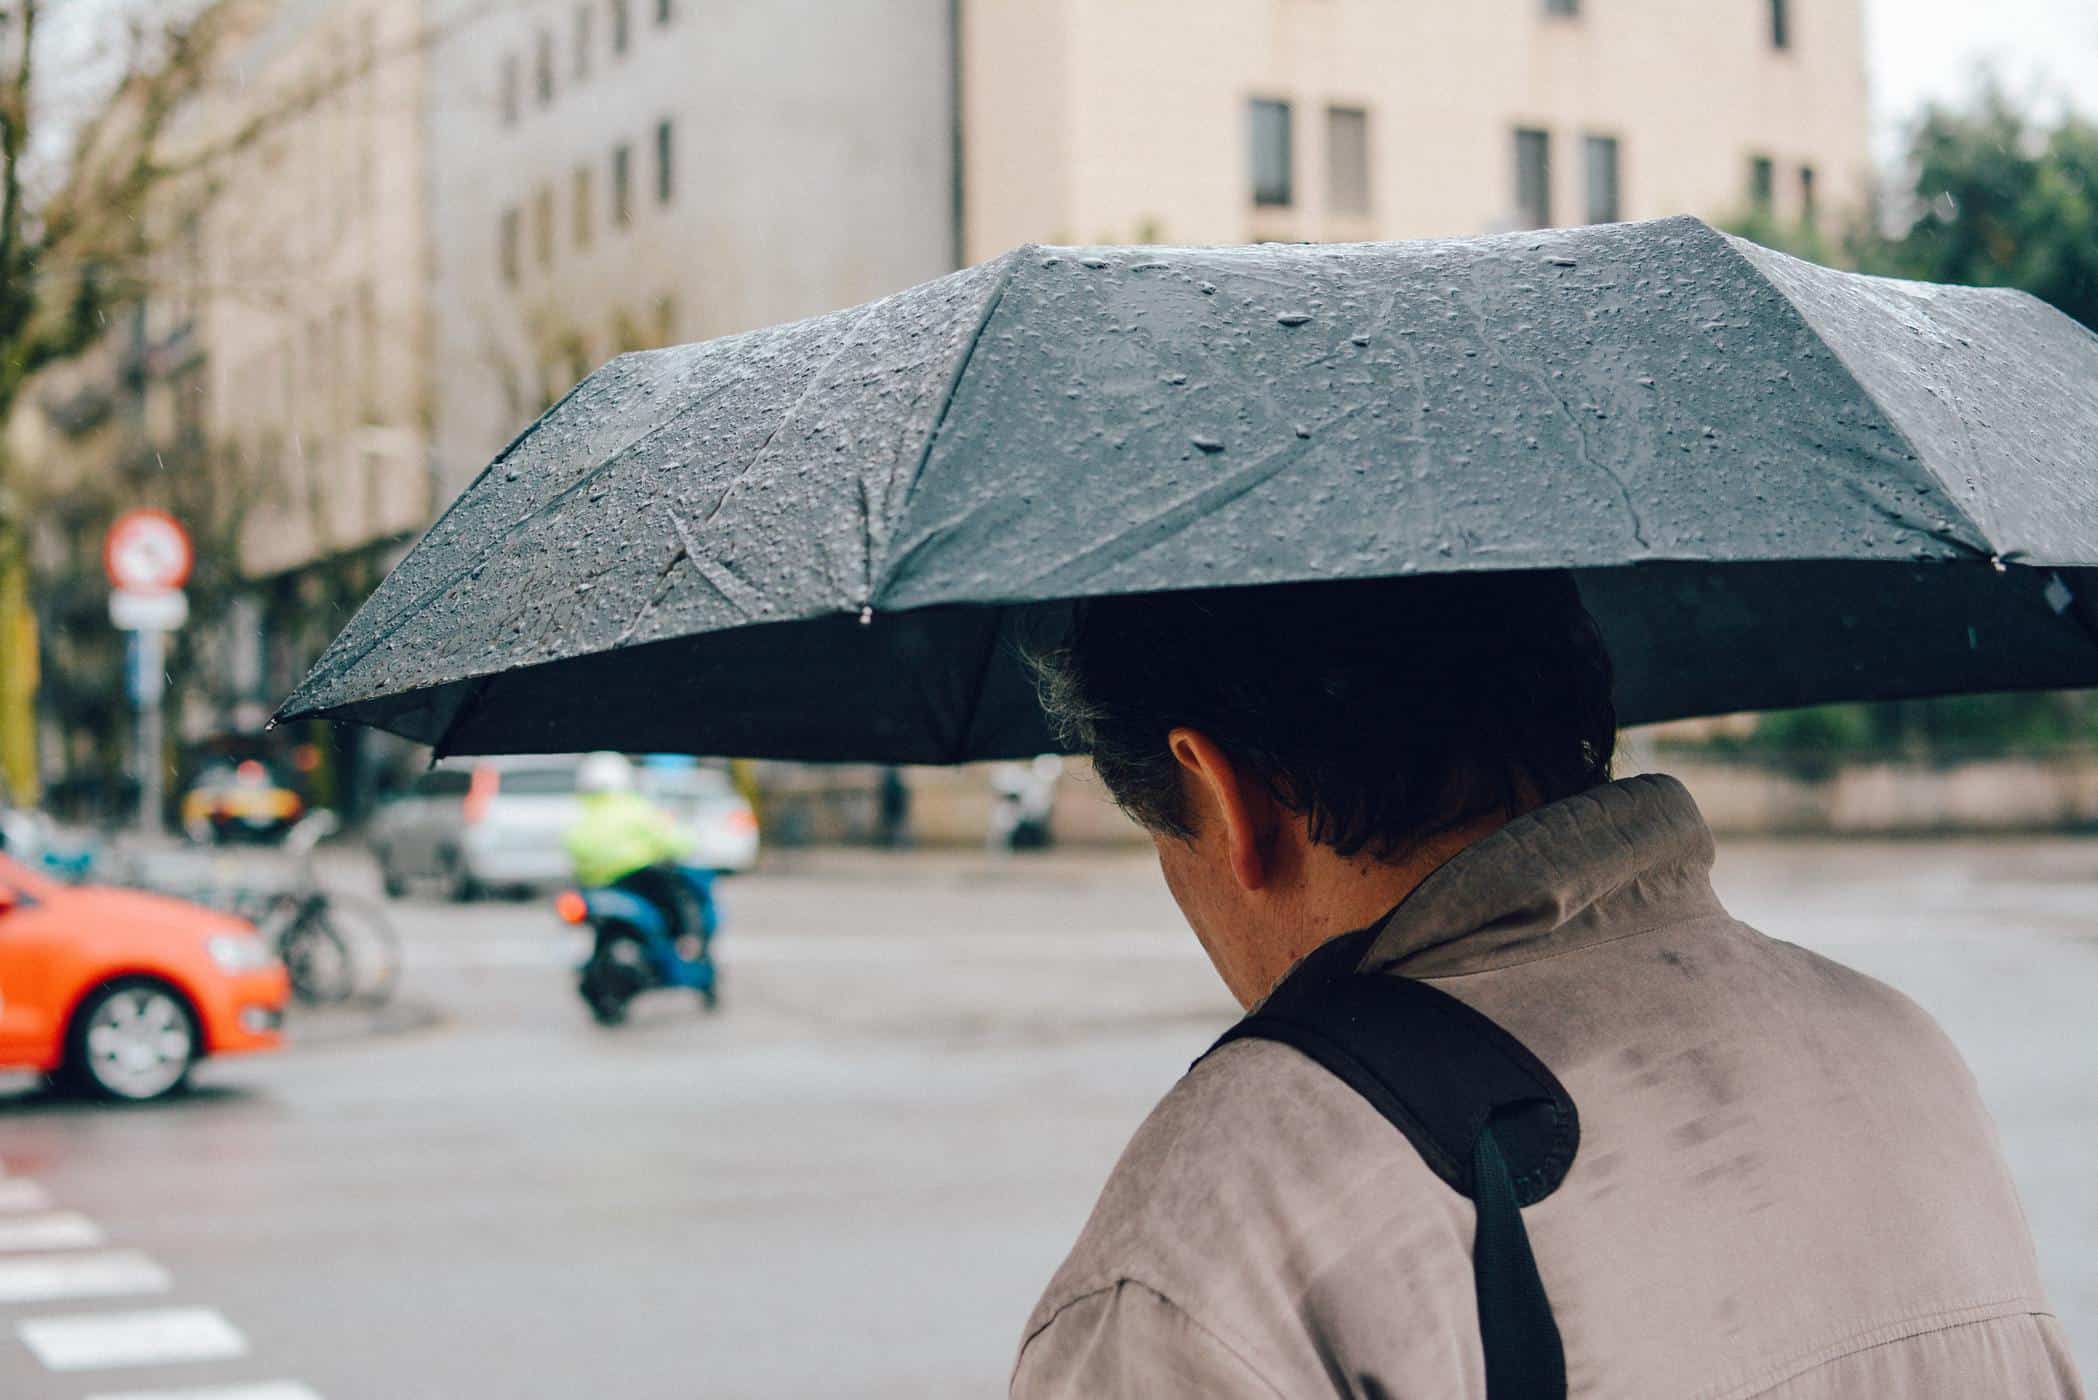 Ploaia te poate îmbolnăvi, iată 4 sfaturi puternice pentru a o preveni